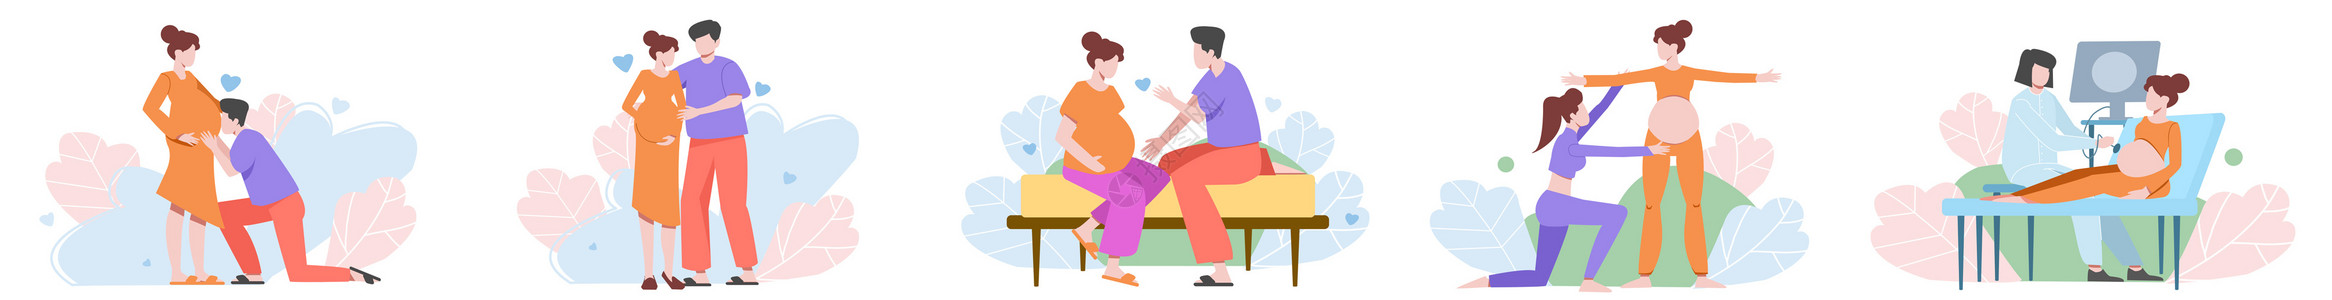 中年孕妇产前护理孕妇伴侣呵护训练场景插画元素插画